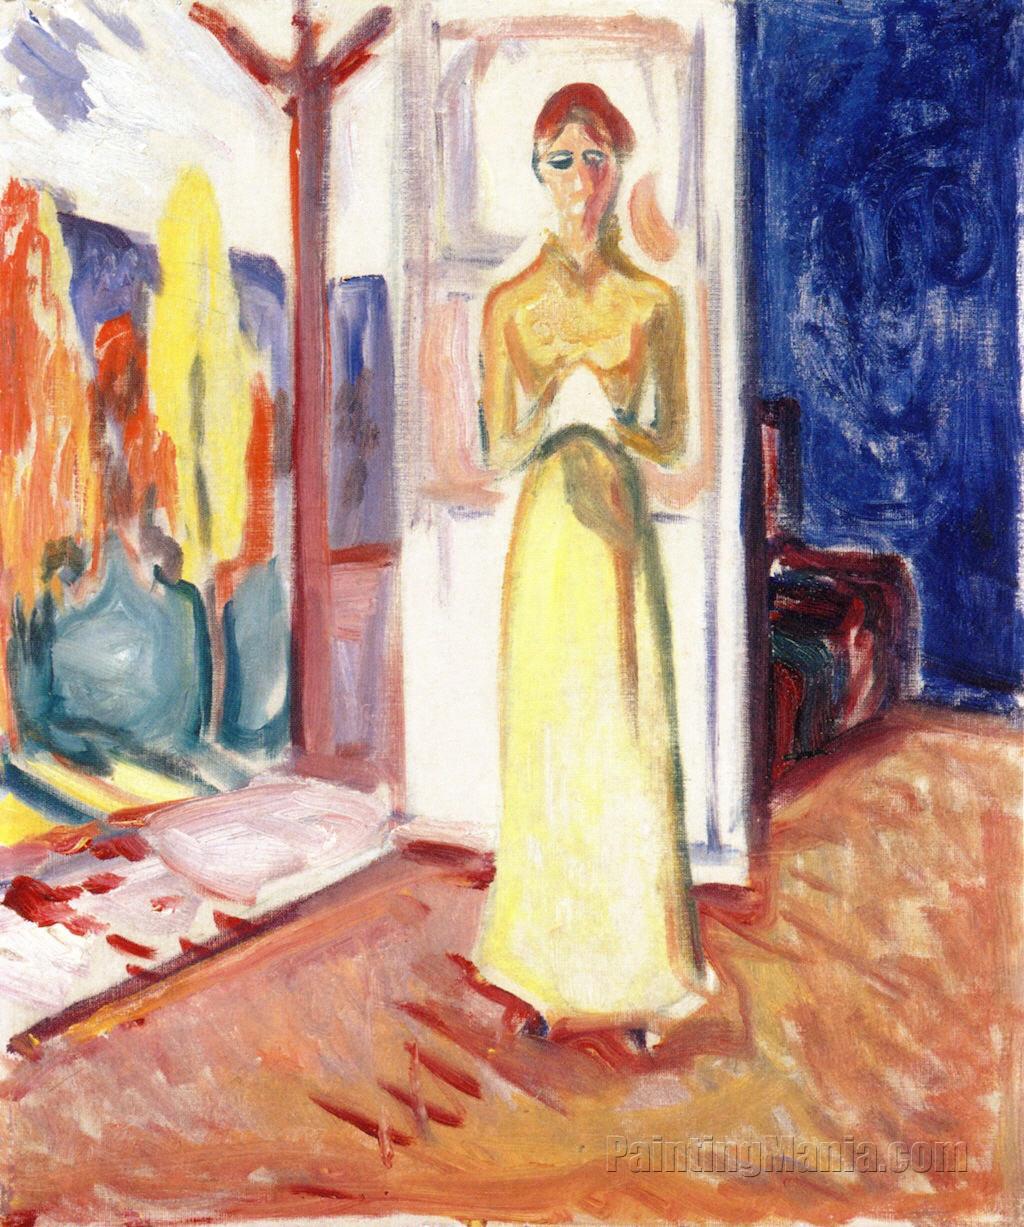 Woman Standing in the Doorway